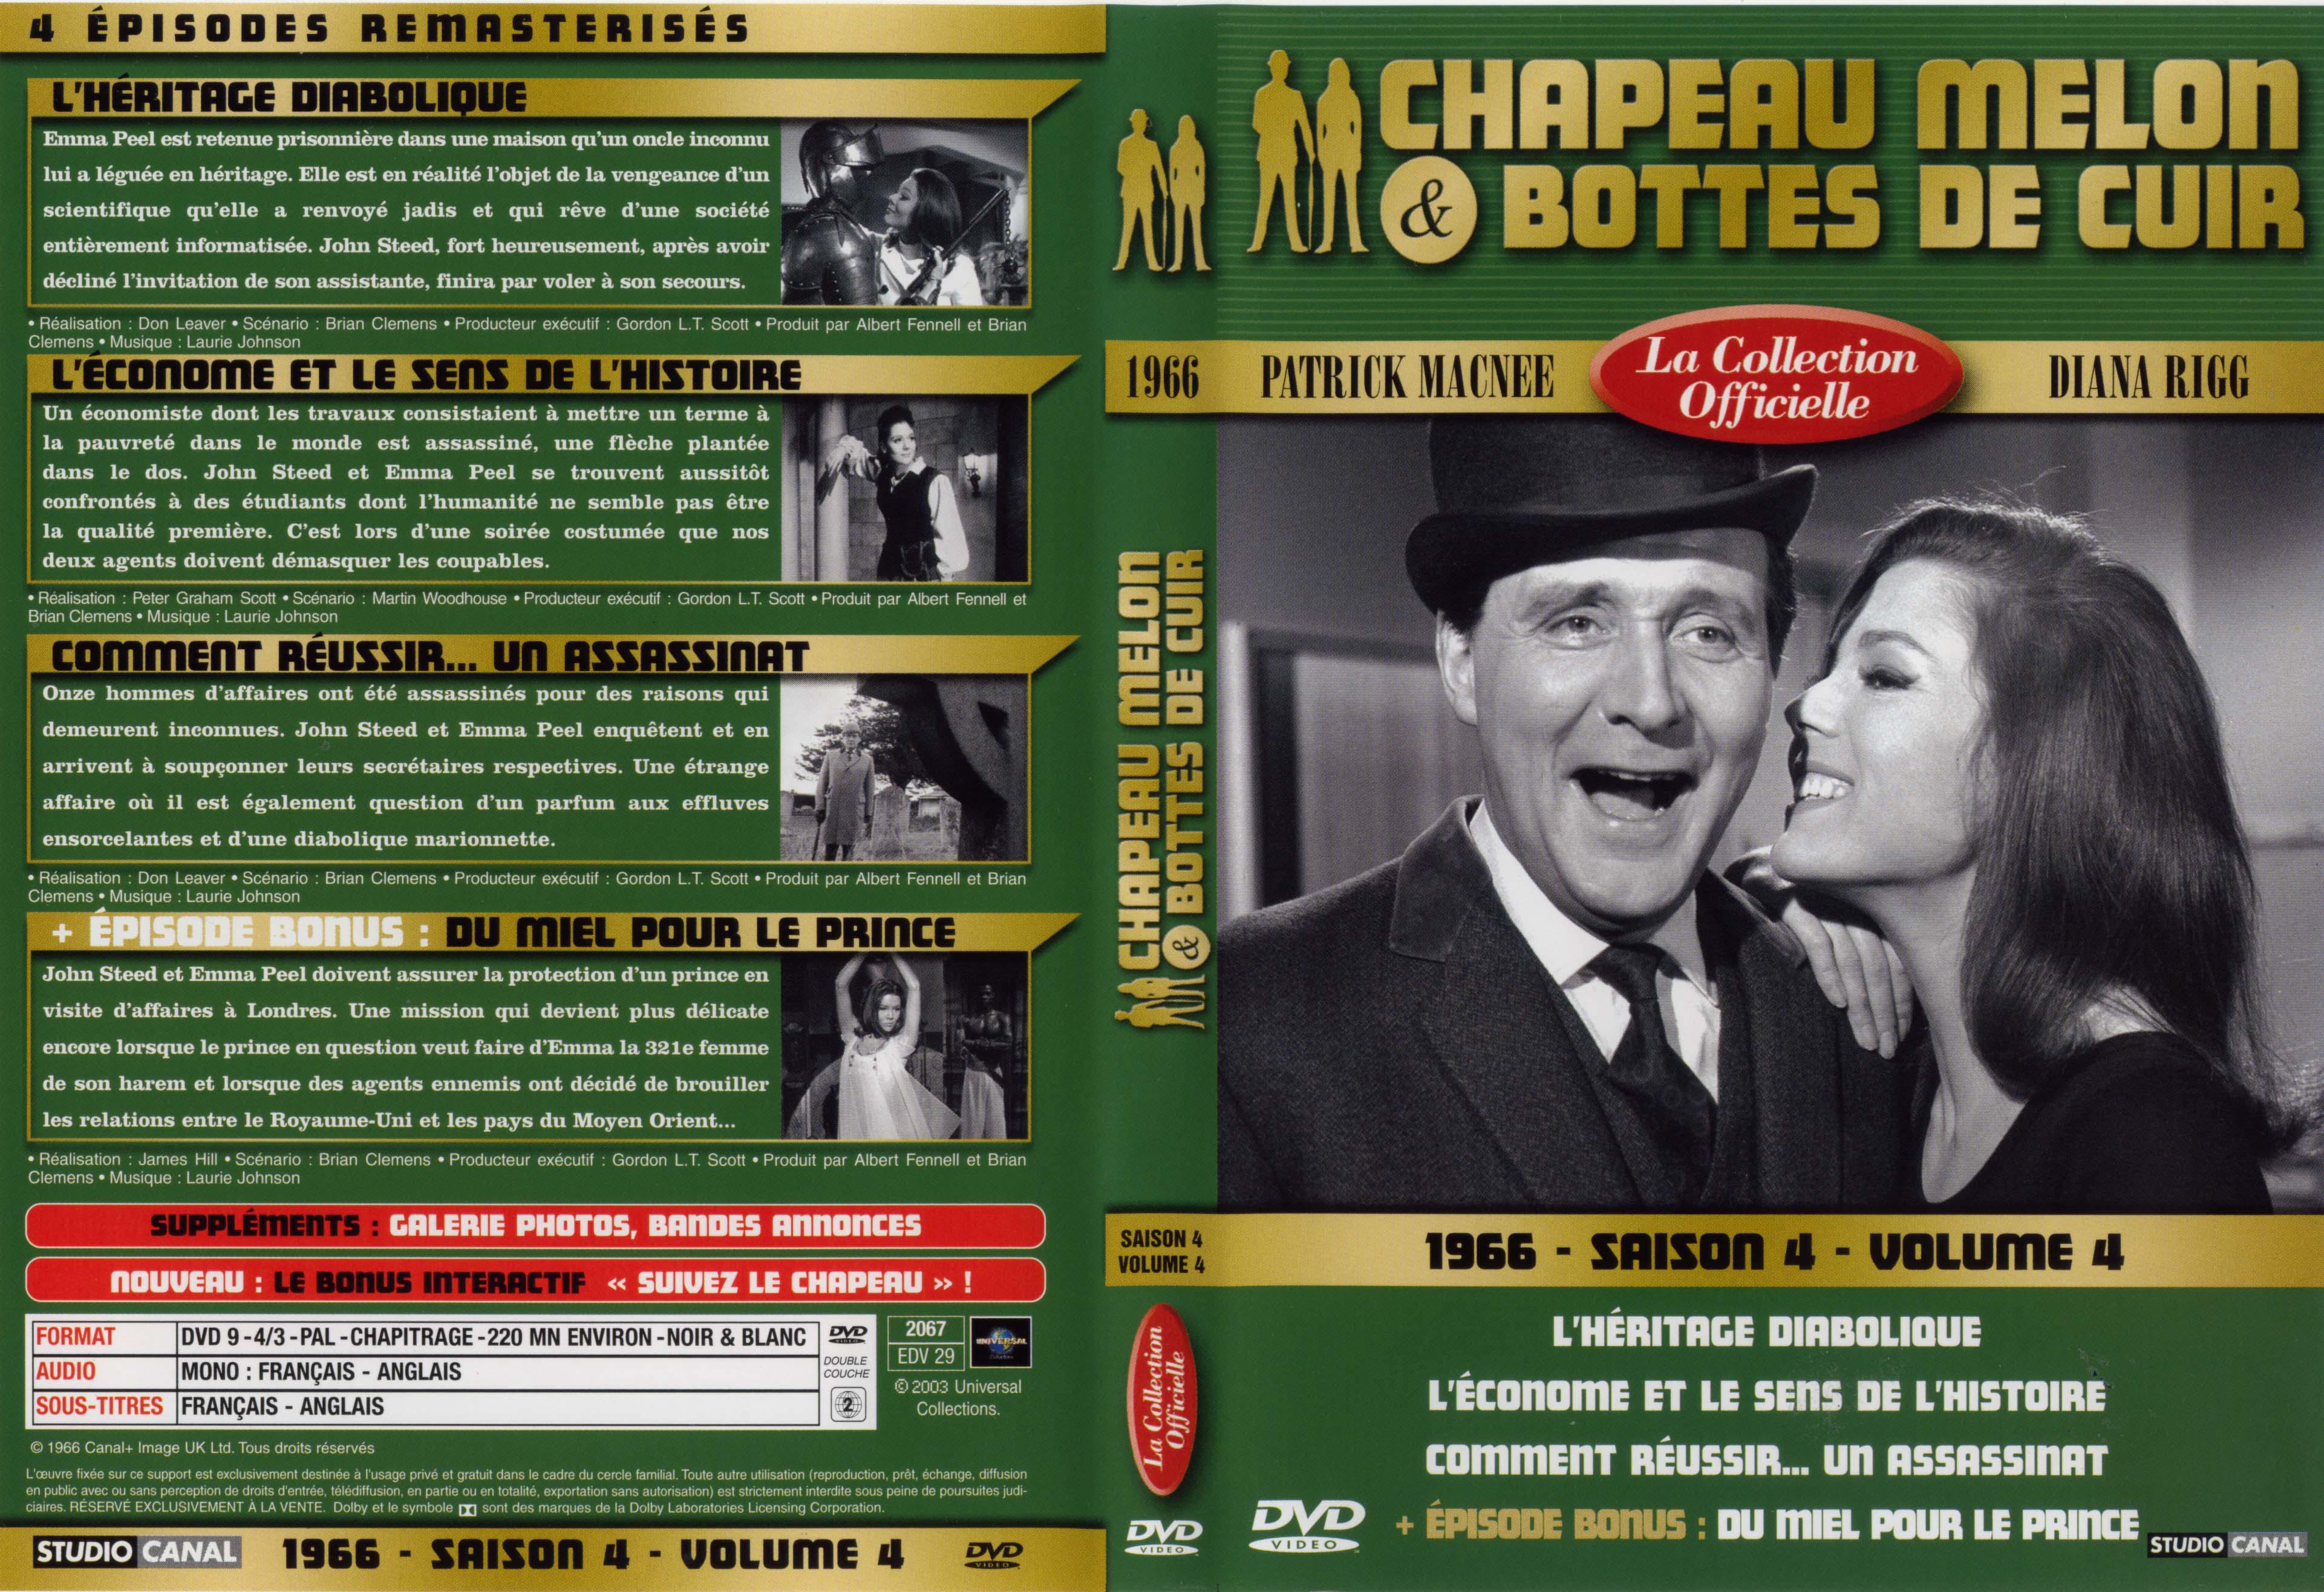 Jaquette DVD Chapeau melon et bottes de cuir 1966 saison 4 vol 4